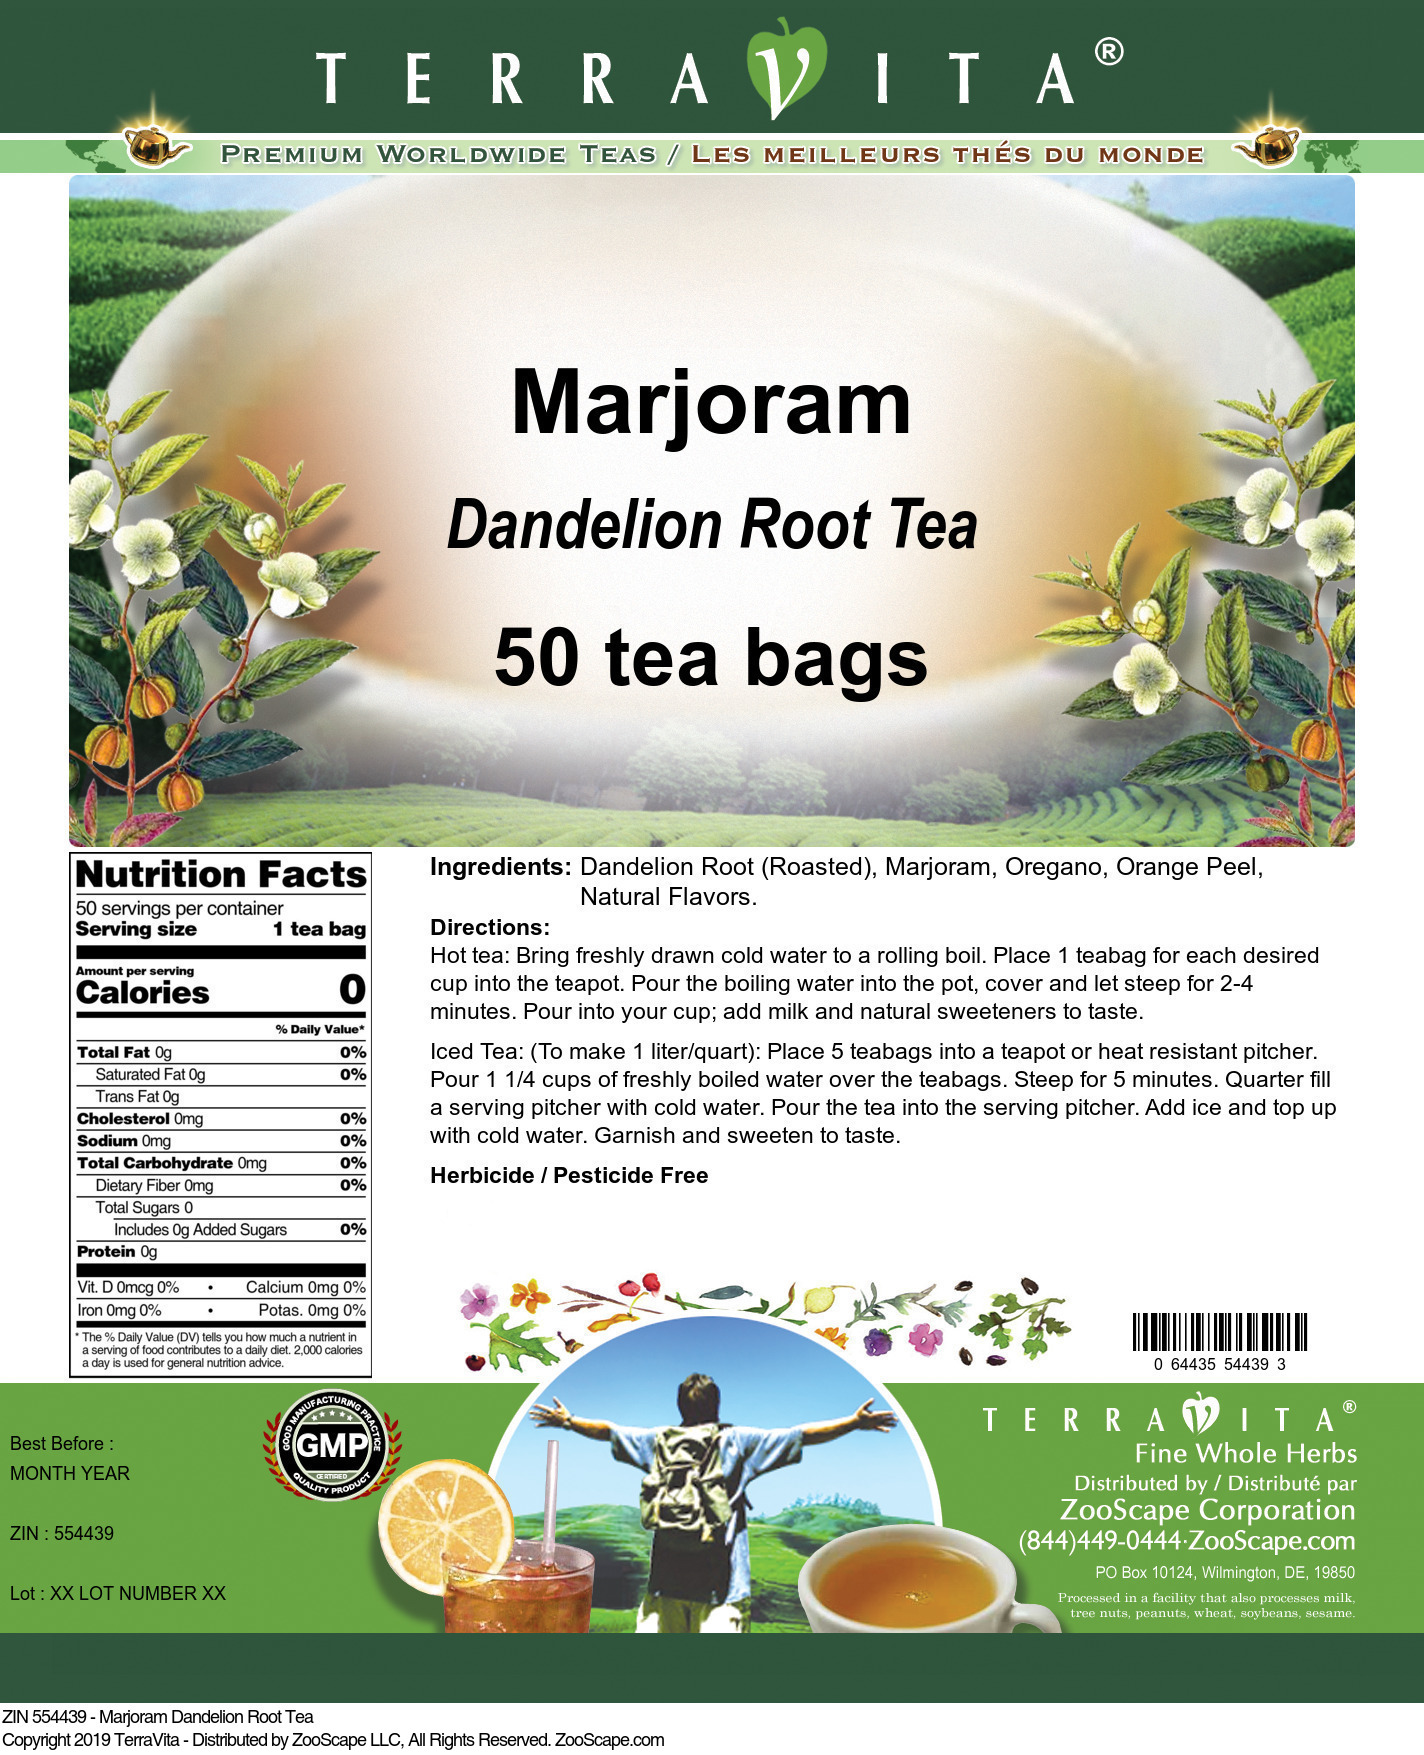 Marjoram Dandelion Root Tea - Label